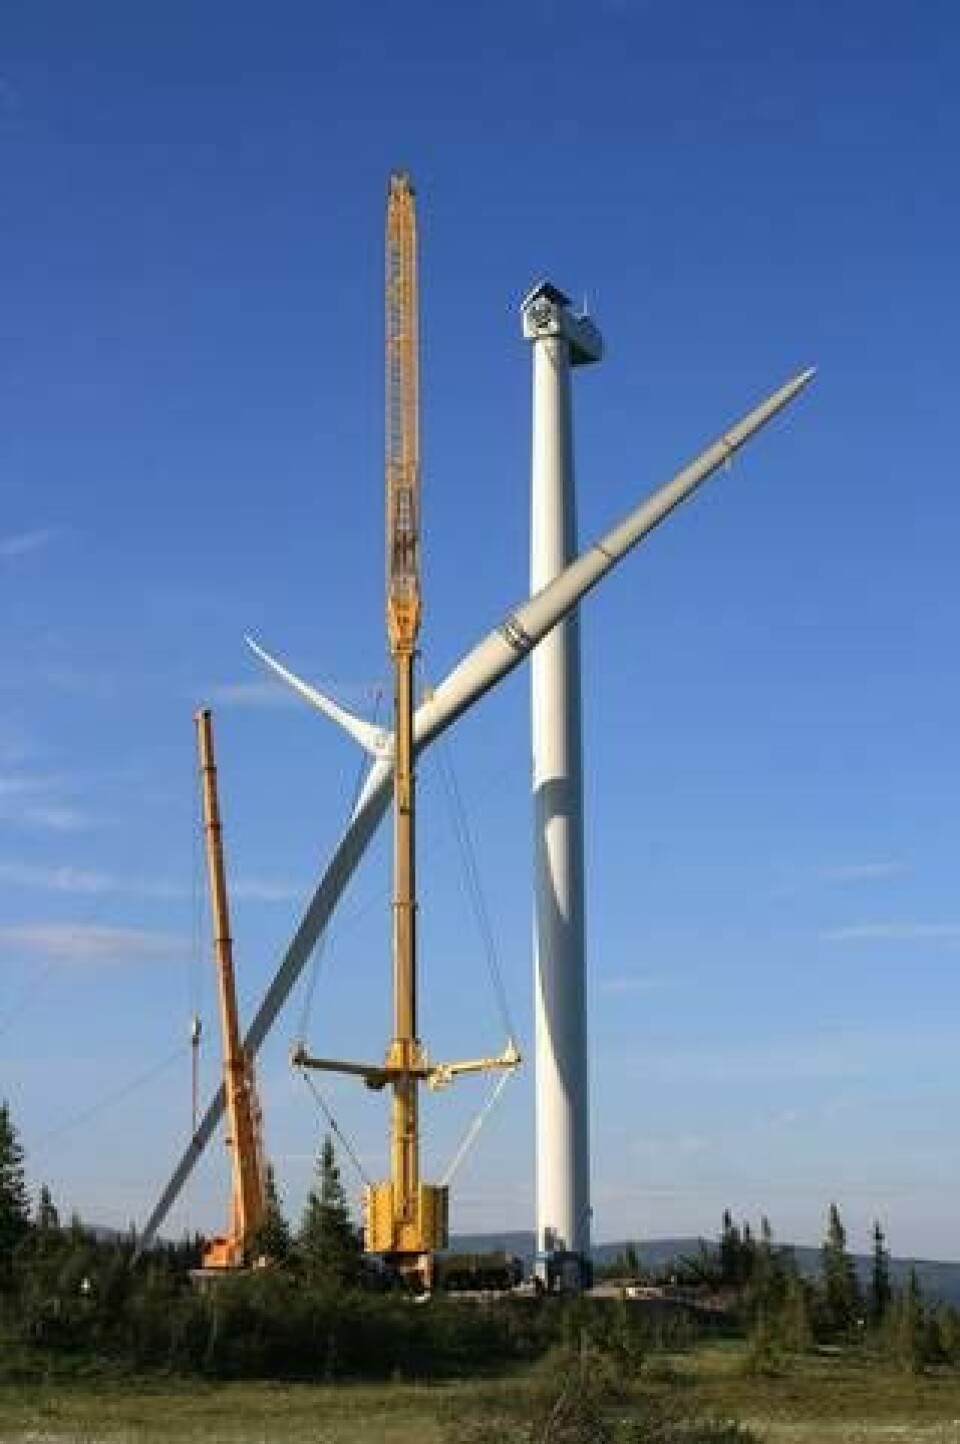 Turbinerna är 2,5 MW Nordex 90. Navhöjden är 80 meter och rotordiamtern 90 meter vilket ger en total höjd på 125 meter från marken till översta vingspetsen. Storrun Vindpark vänts producera 80.000.000 kWh årligen vilket motsvarar elförbrukningen i 5 300 villor. Foto: Dong Energy